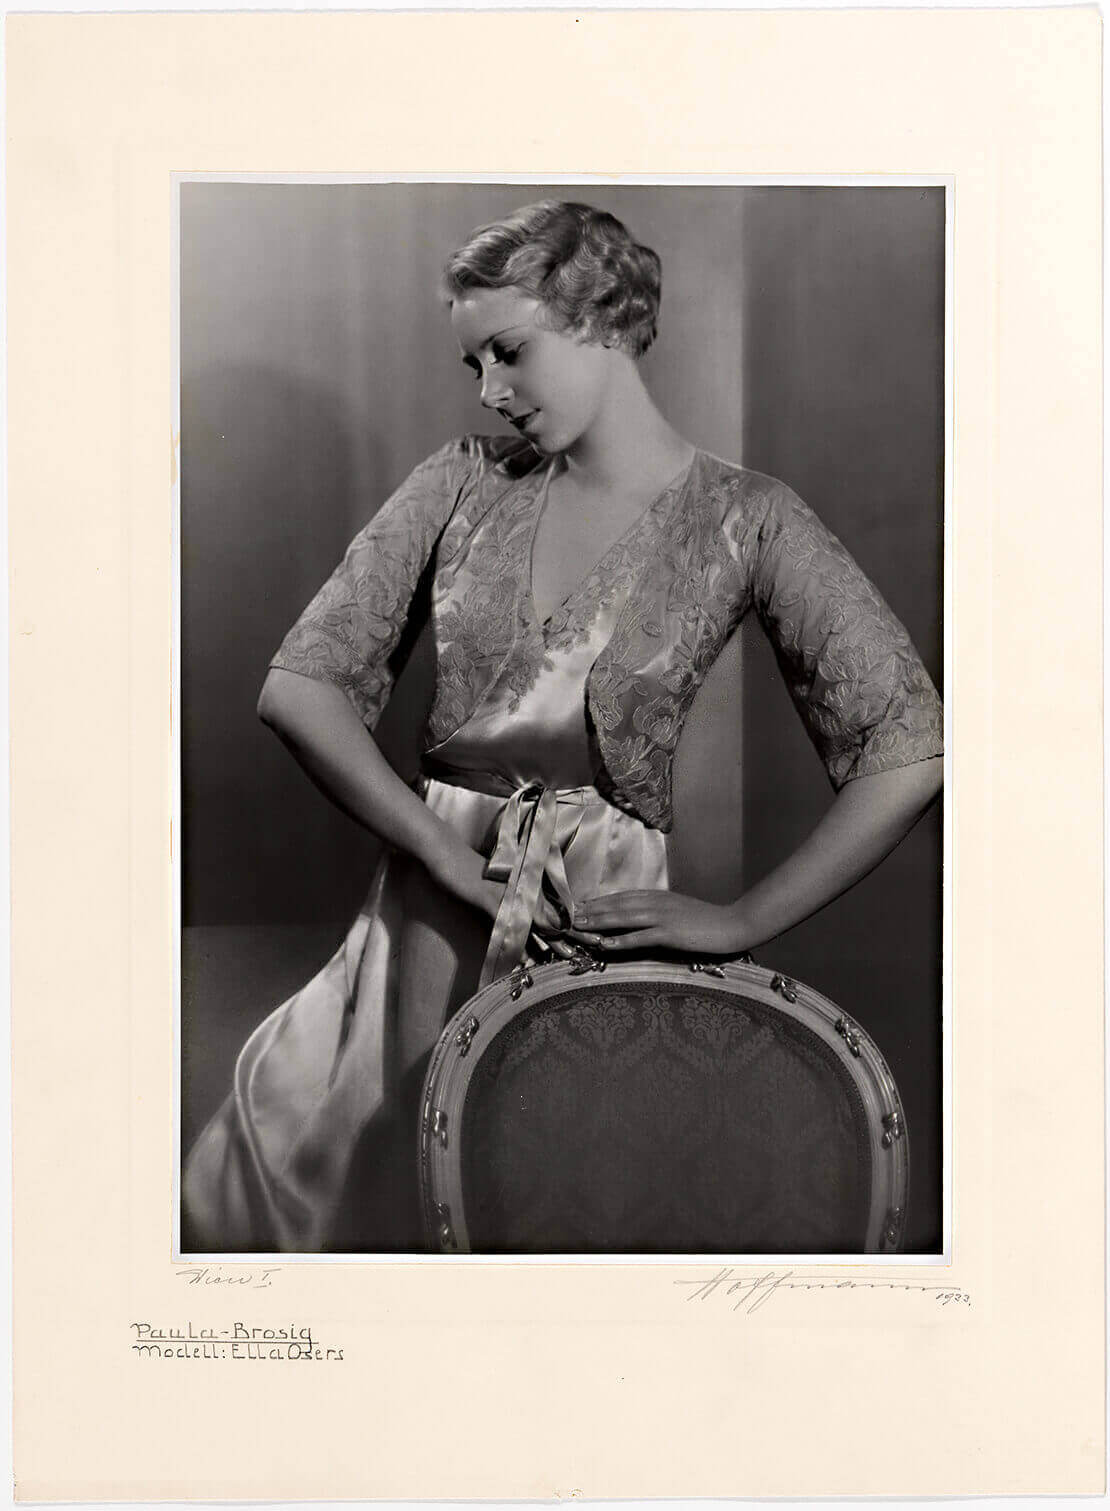 Schauspielerin Paula Brosig in einem Spitzenpyjama mit Jäckchen (Modell von Ella Osers), Fotografie: Atelier Kitty Hoffmann, 1933, Wien Museum 